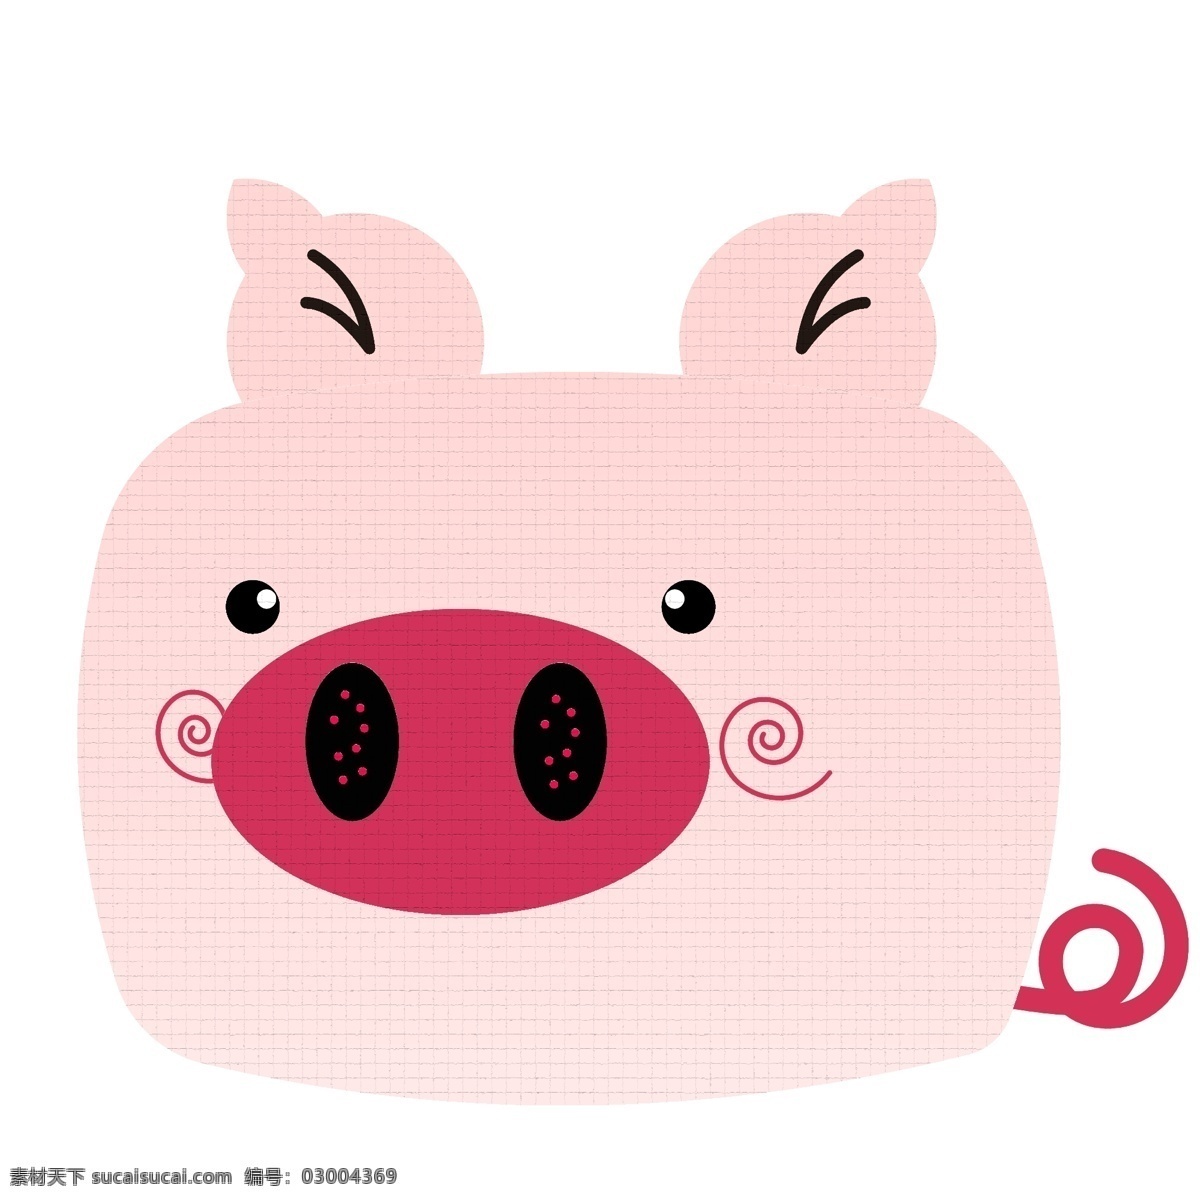 马赛克 风格 卡通 葫芦 猪 商用 可爱 卡通猪 猪年